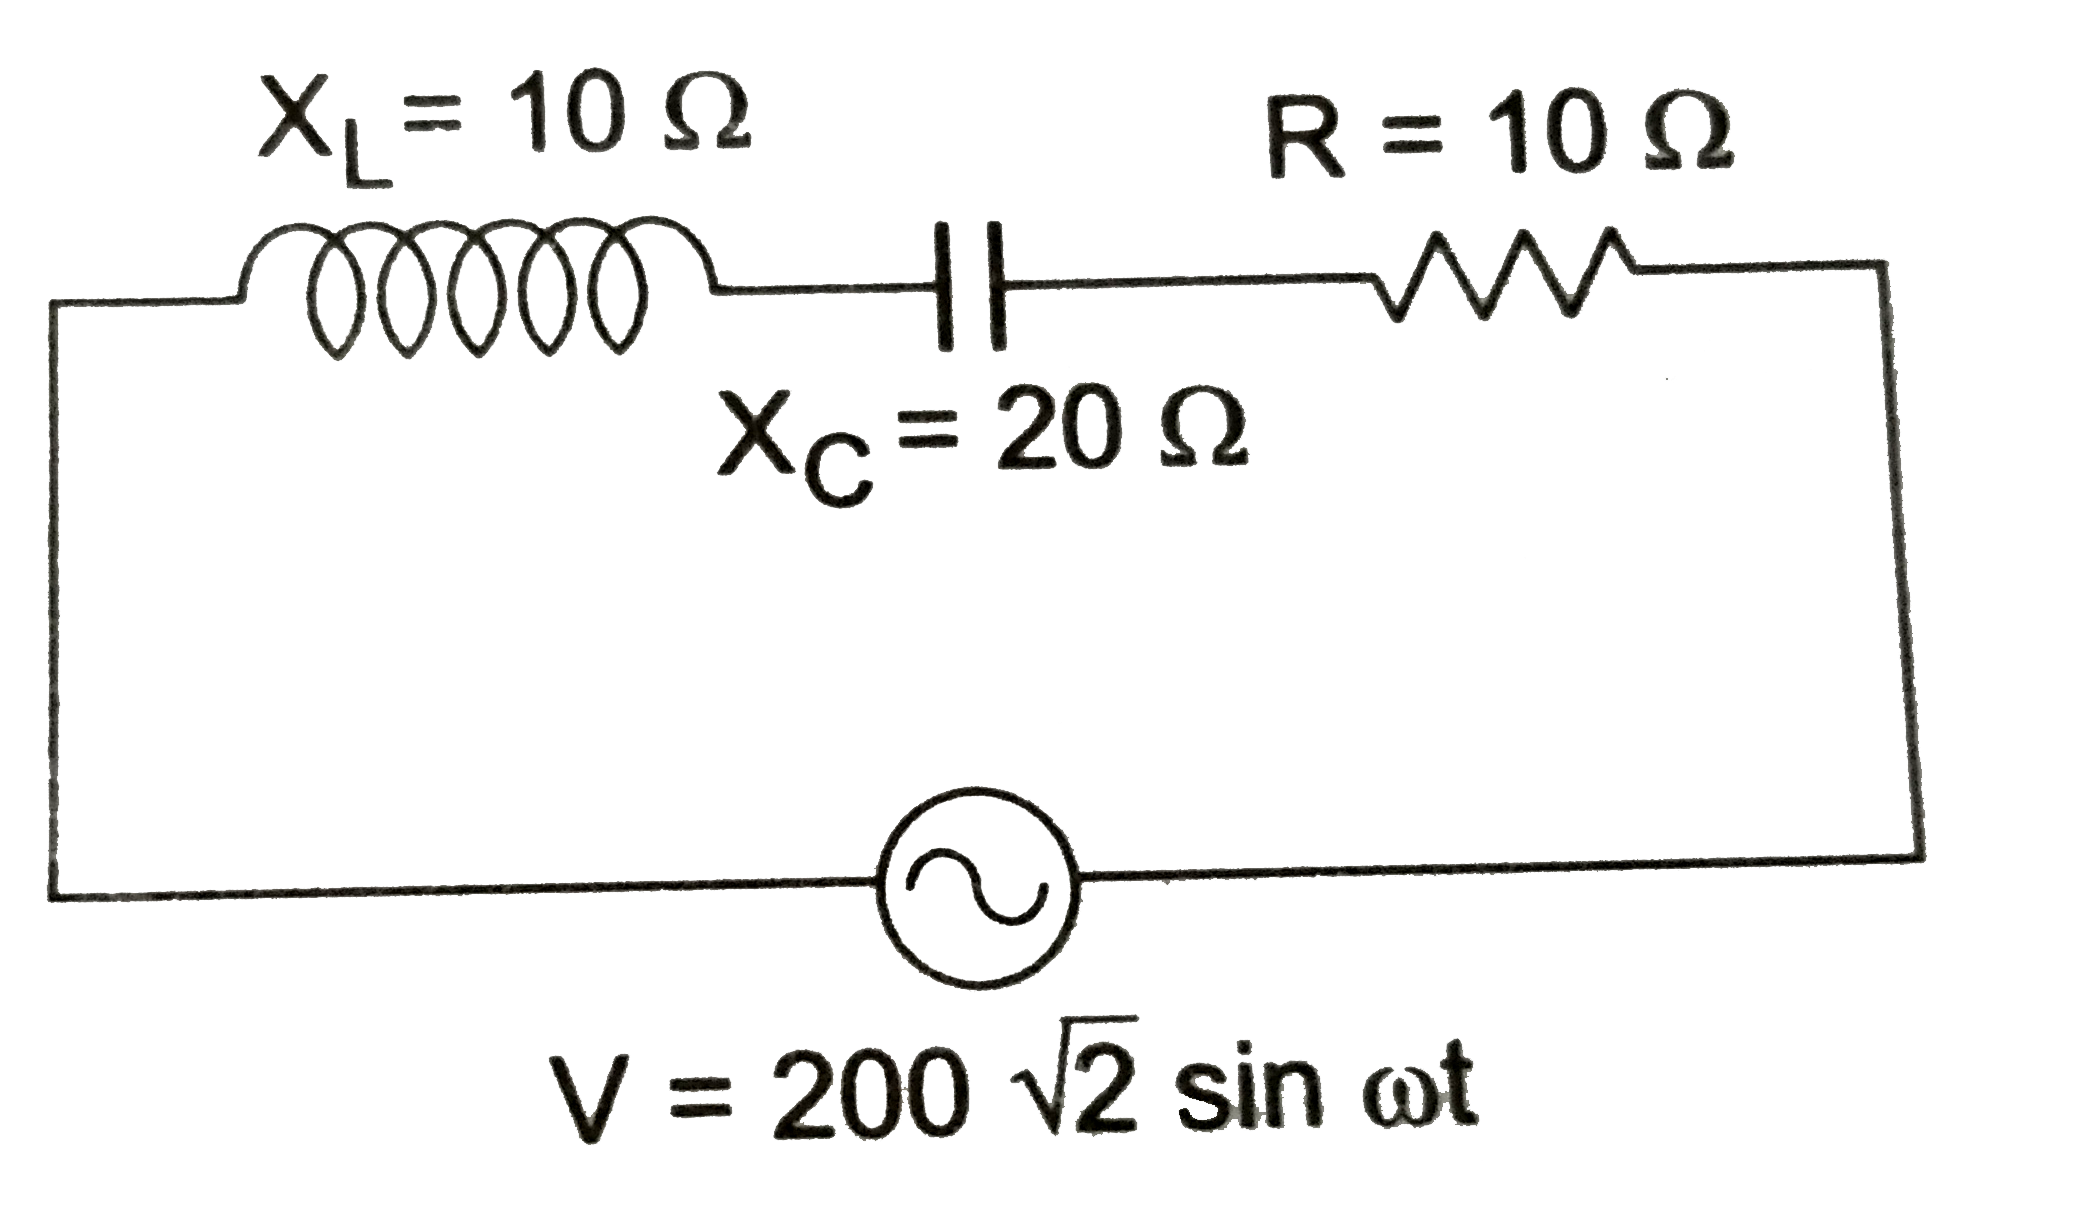 प्रदर्शित प्रत्यावर्ती धारा का L -C -R परिपथ के लिए प्रेणनिक प्रतिघात X(L)=10 Omega संधारित्रिय प्रतिघात X(c)=20Omega तथा प्रतिरोध R=10 Omega है।